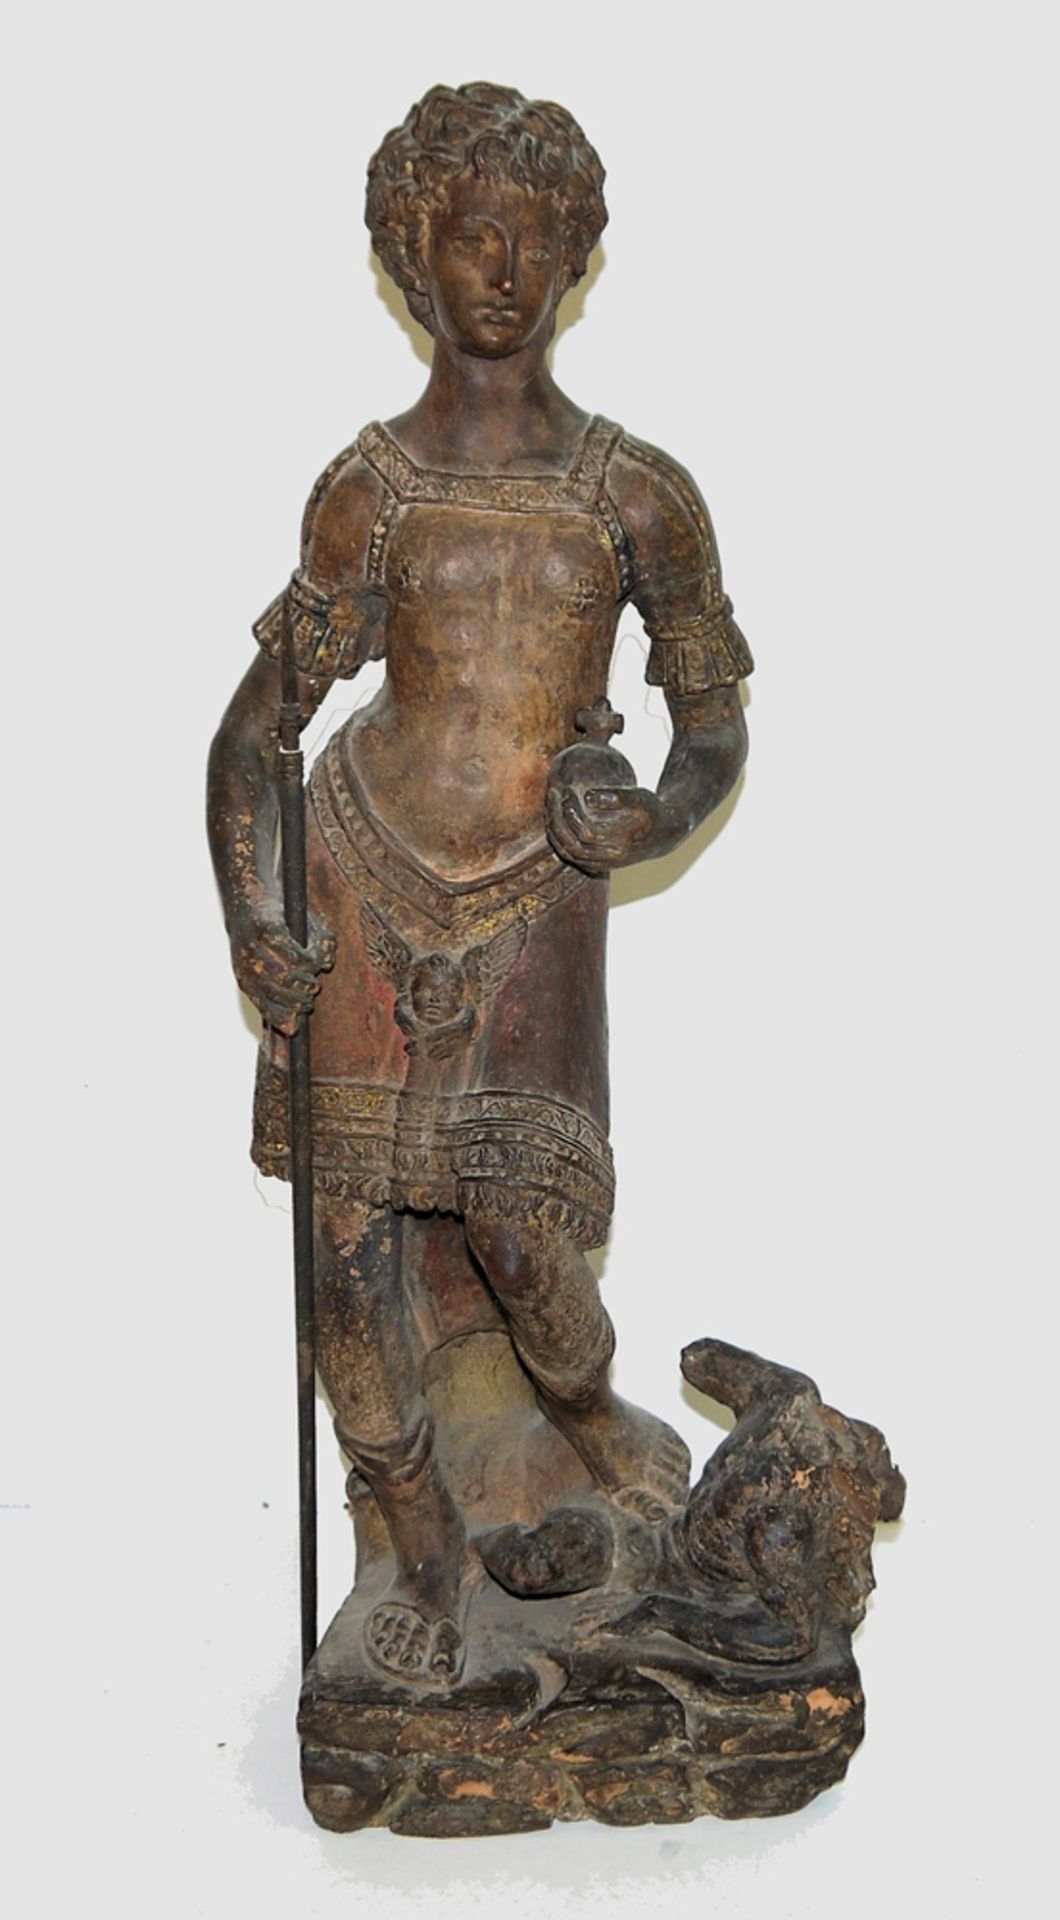 Anonym, Norditalien um 1600, Erzengel Michael auf dem besiegten Teufel stehend, große Terracotta-